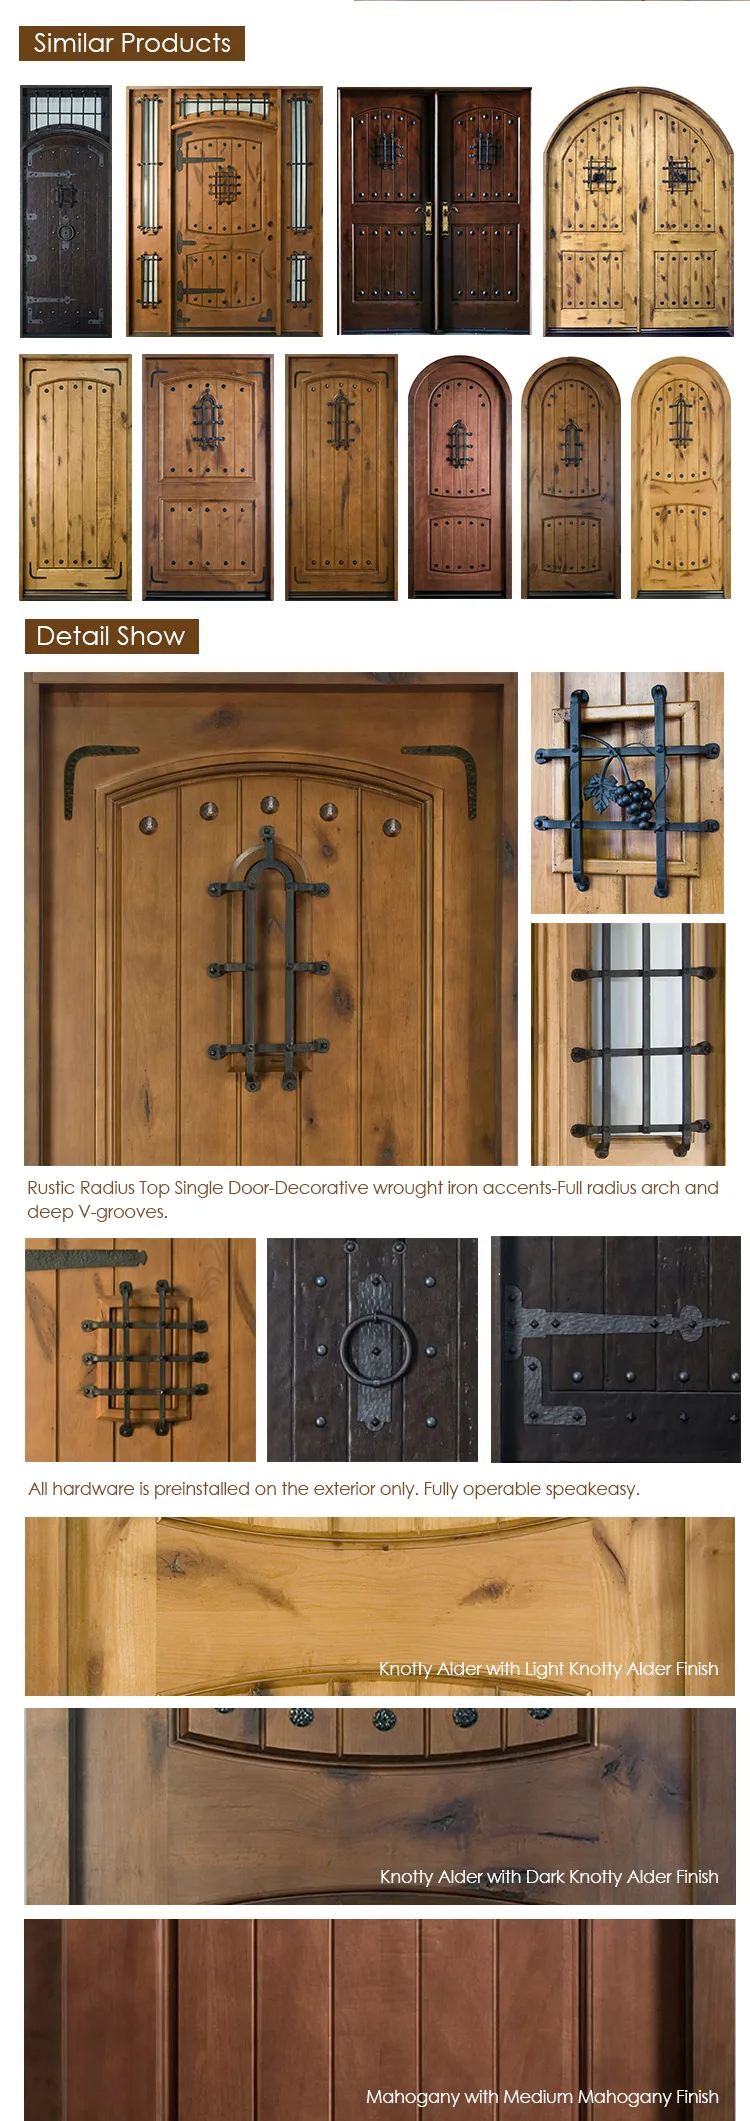 Wooden door with frame decoration glass insert wood interior door